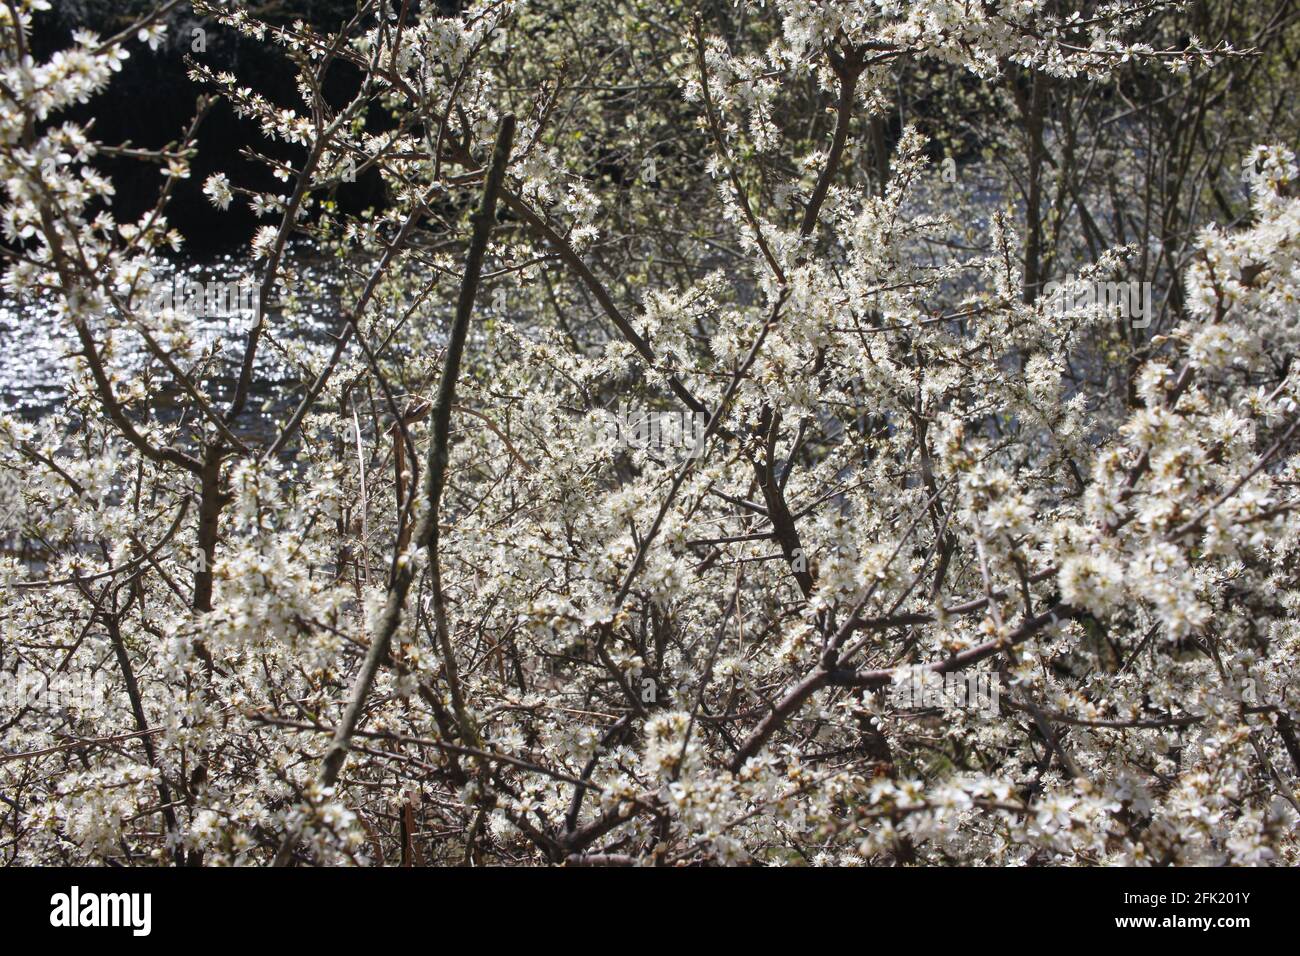 Malerische Spaziergänge am Flussufer, weiße Blüten blühen auf einem Baum. Frühlingserwachen, Bäume Inspiration ändern und transformative Schönheit. Stockfoto